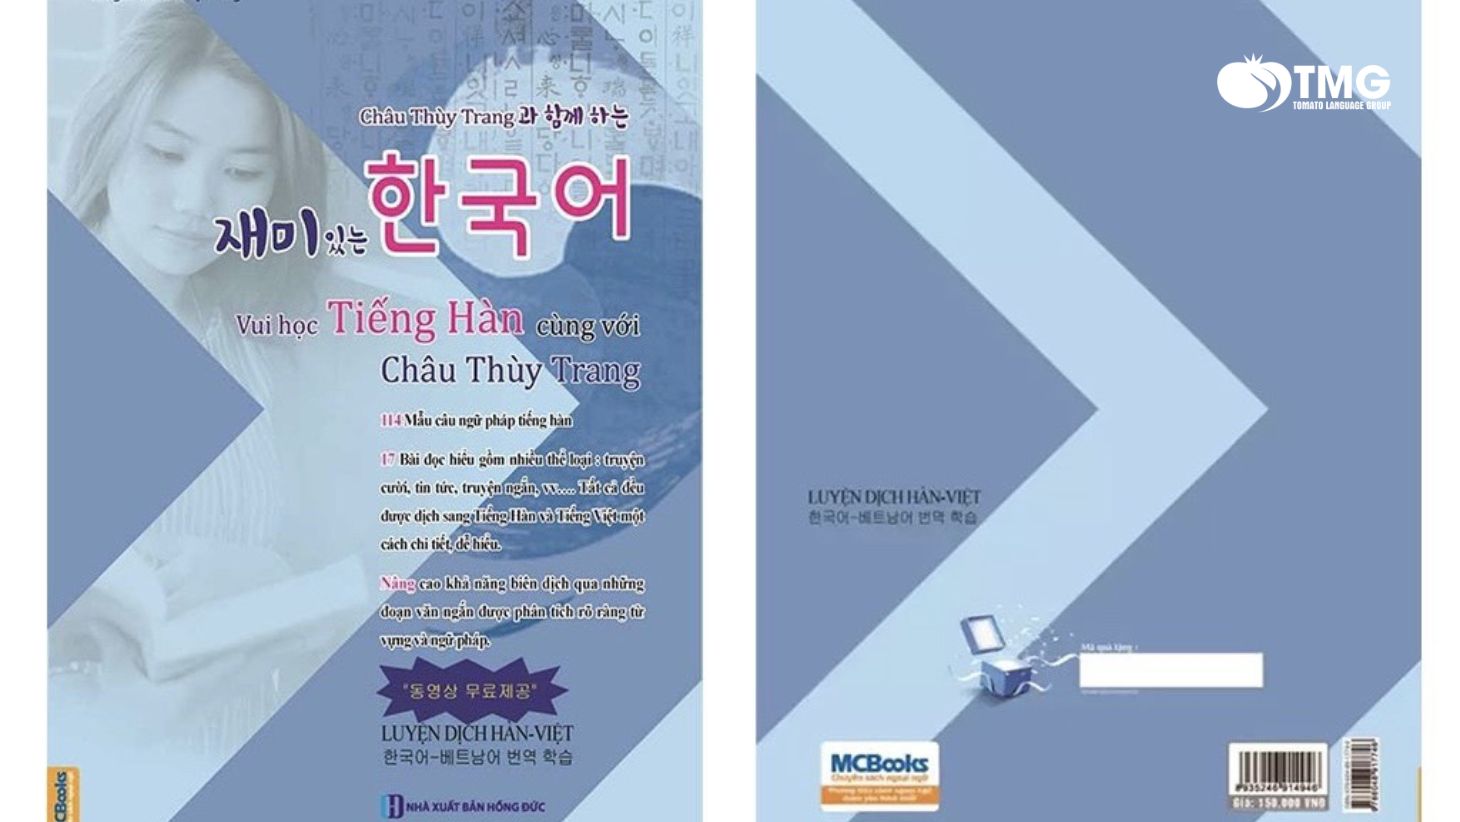 Download “Vui học tiếng Hàn cùng Châu Thùy Trang” miễn phí - Ảnh 3